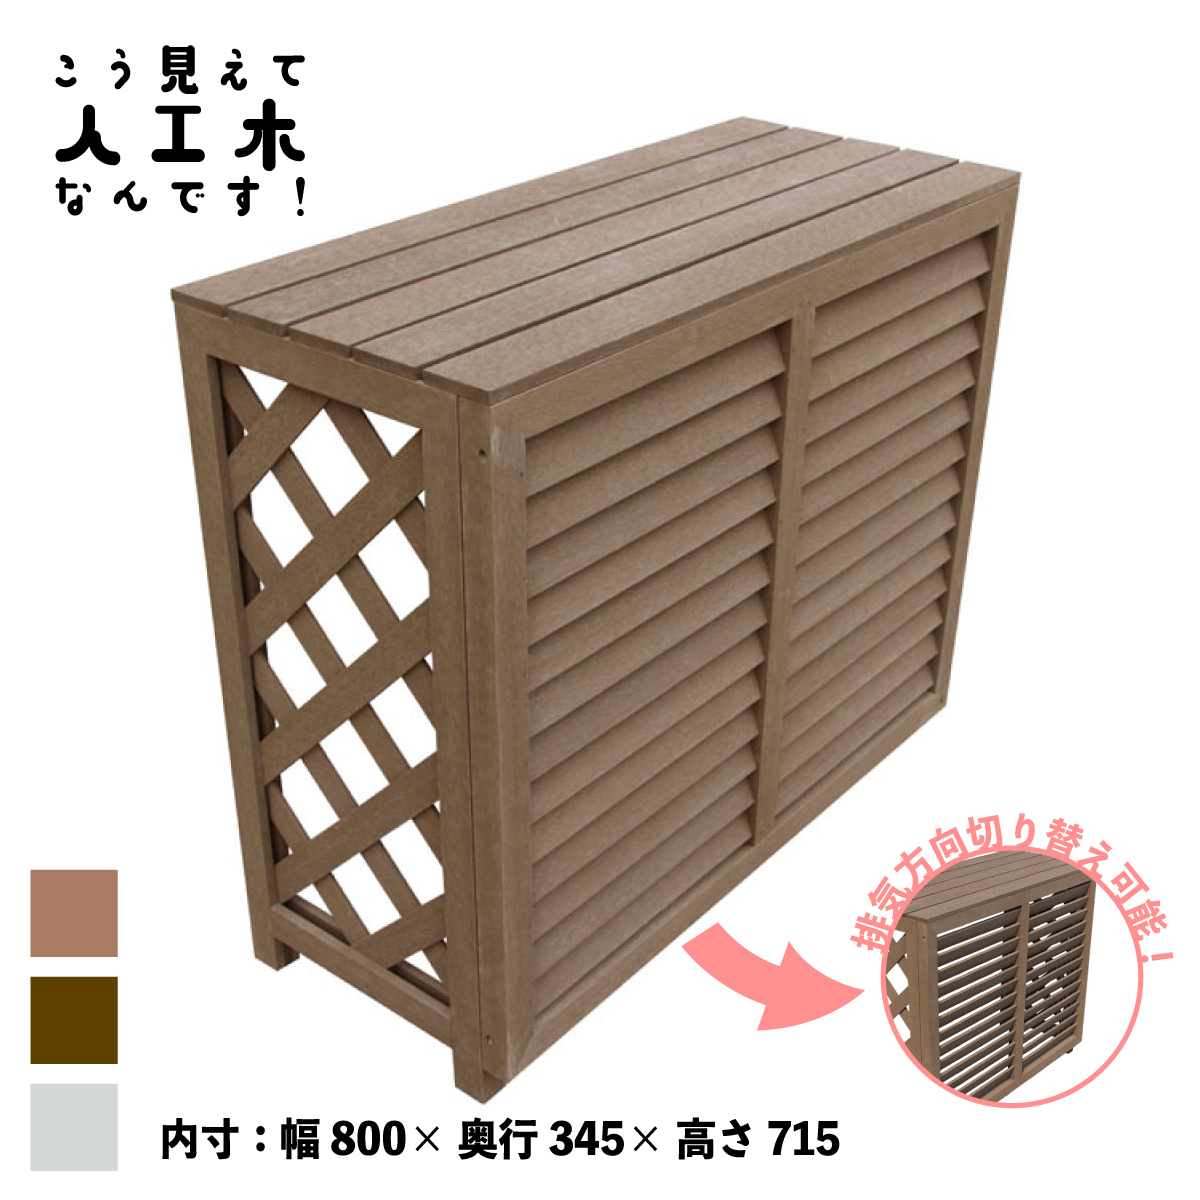 【楽天市場】室外機カバー 人工木製 1010 順目 ナチュラル 1010n 